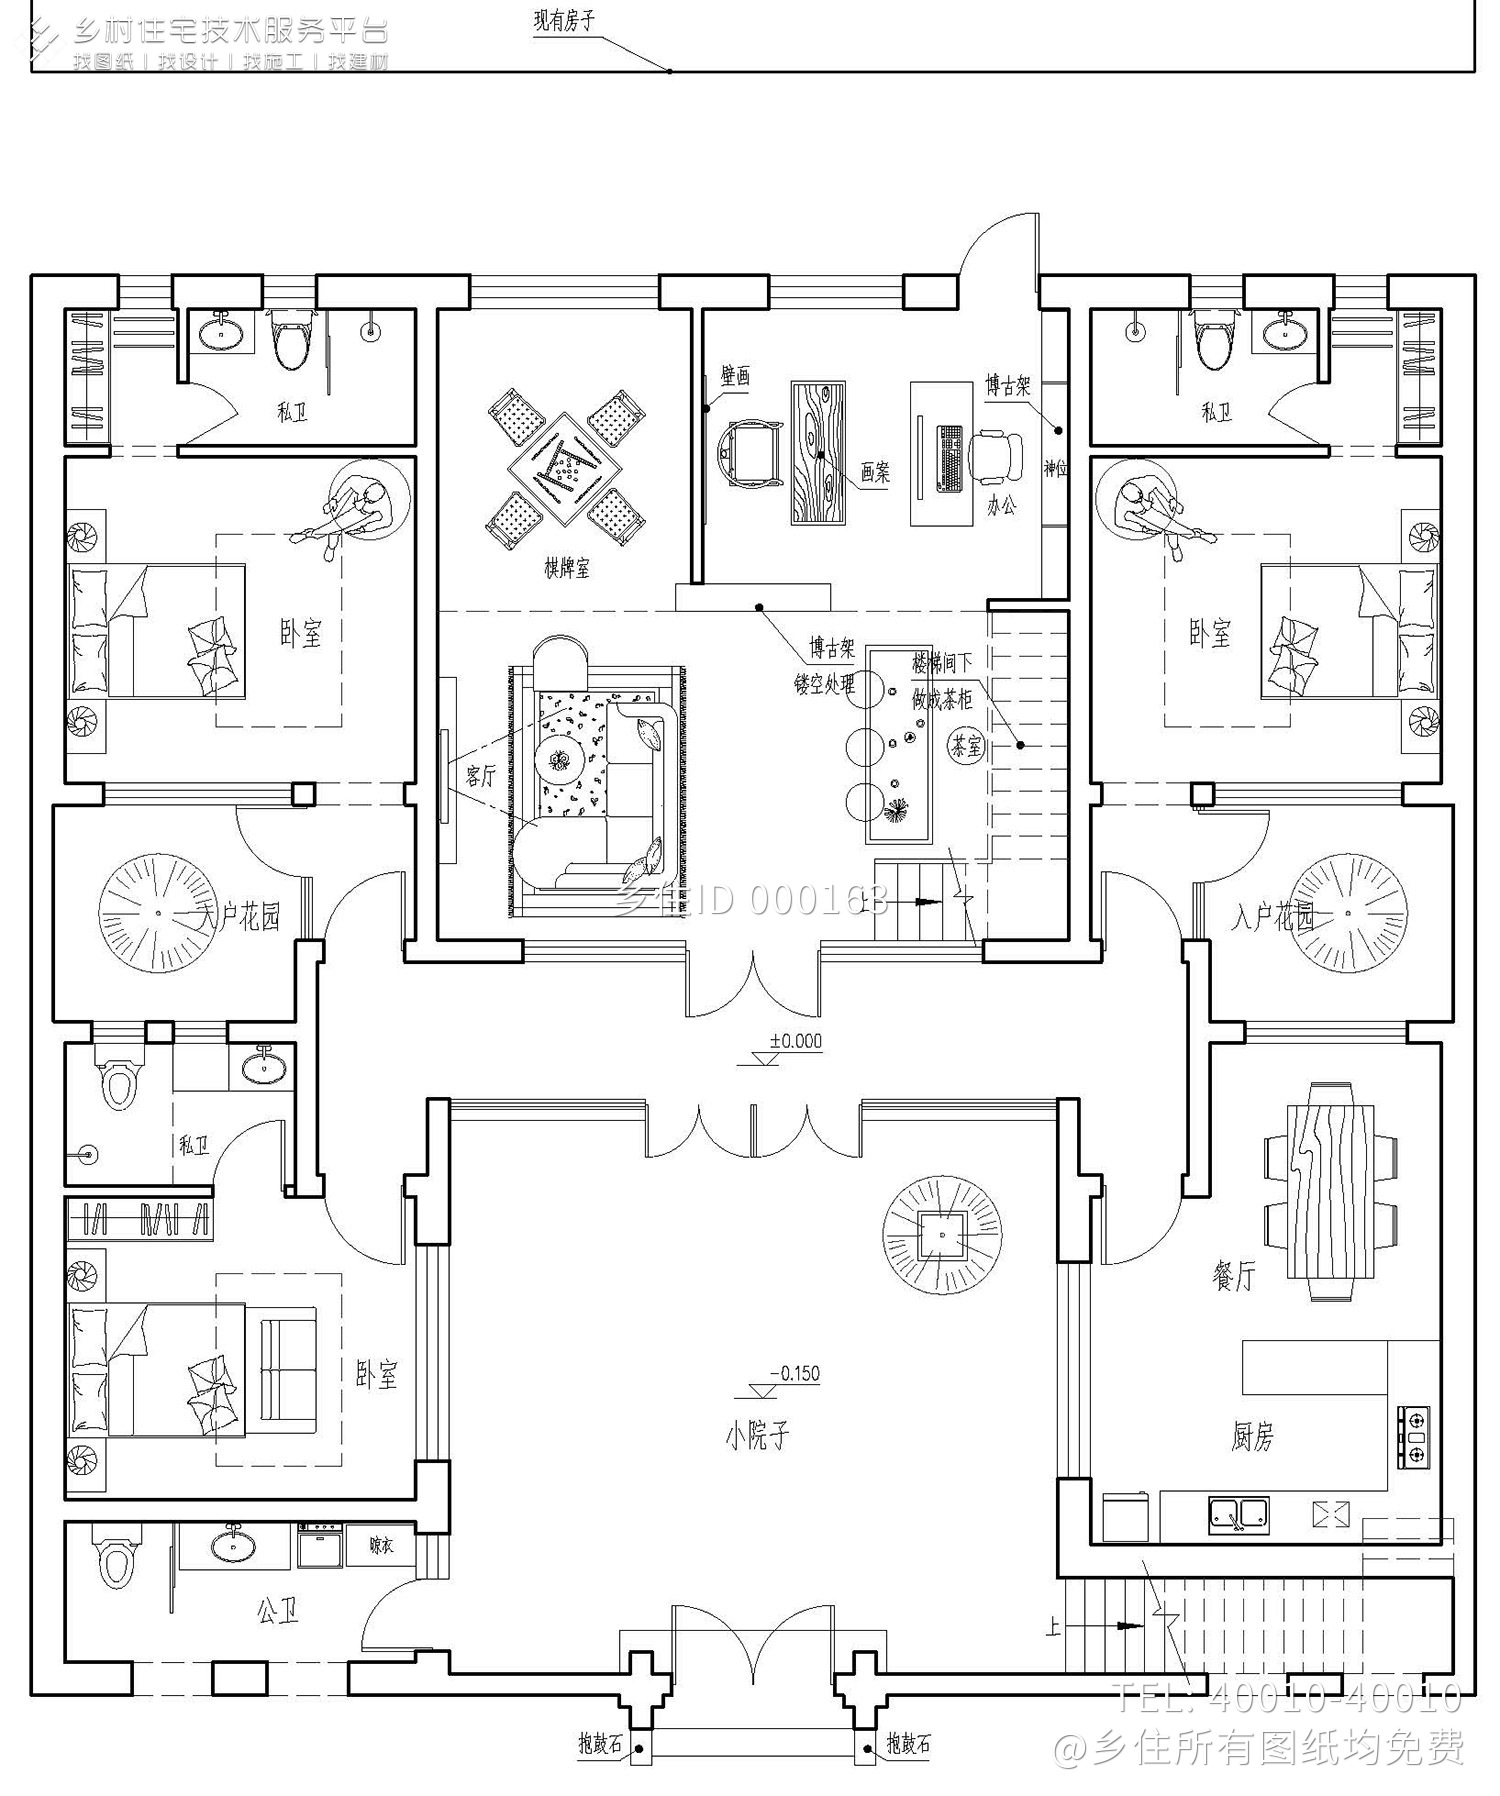 六层商务套房平面布置图 1:75-五星级酒店设计施工-图片